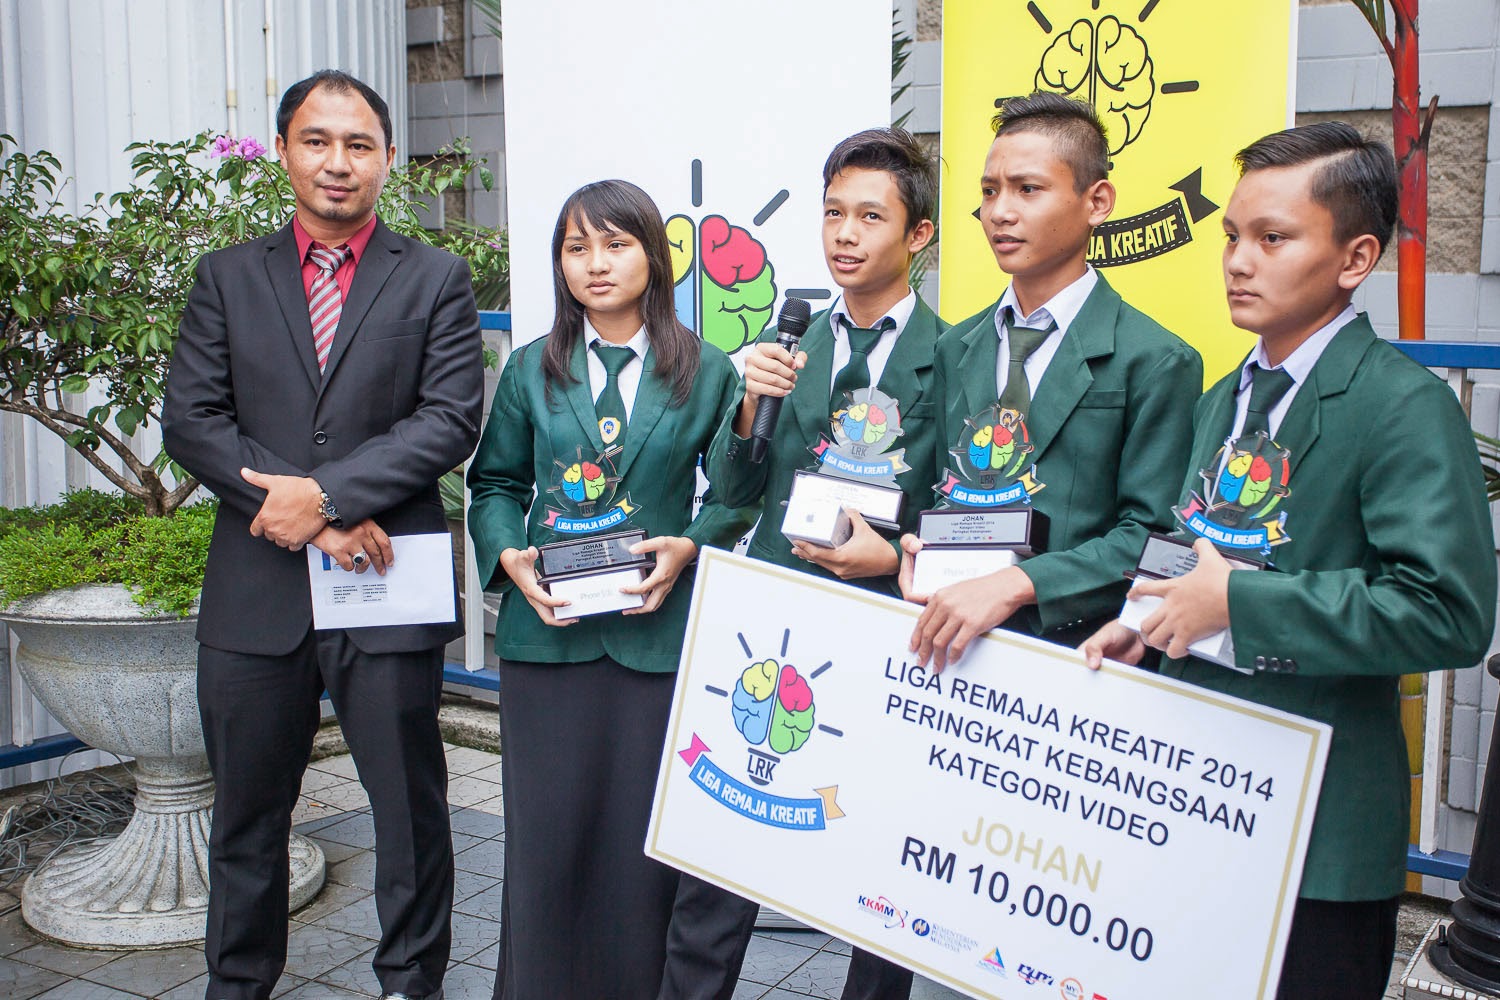 Johan Liga Remaja Kreatif 2014 Peringkat Kebangsaan